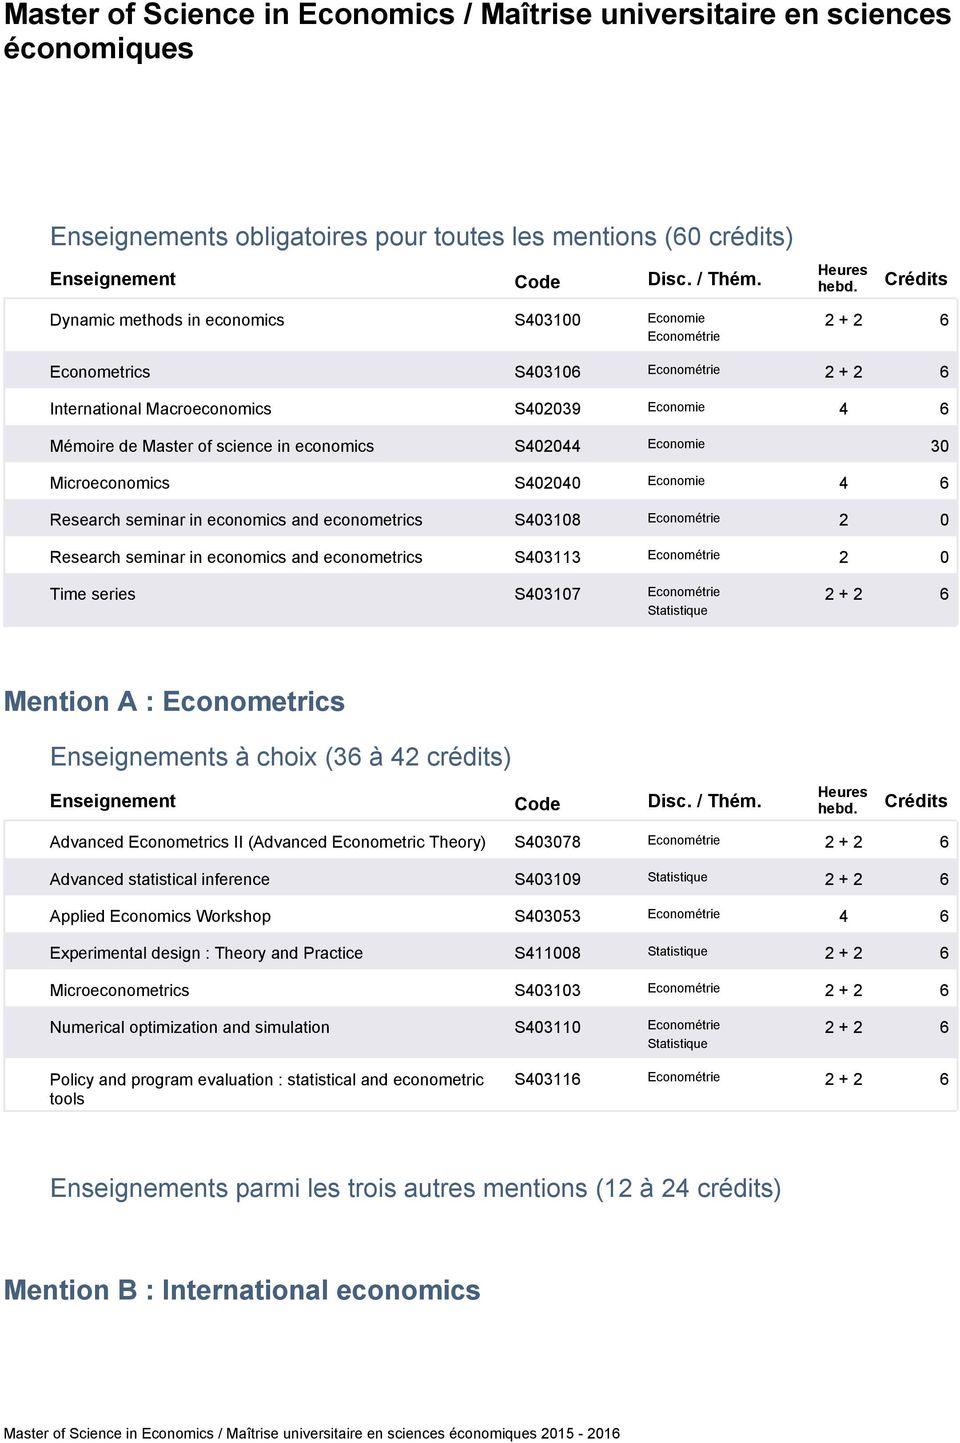 econometrics S0108 Econométrie 0 Research seminar in economics and econometrics S011 Econométrie 0 Time series S0107 Econométrie Statistique Mention A : Econometrics s à choix ( à crédits) Advanced